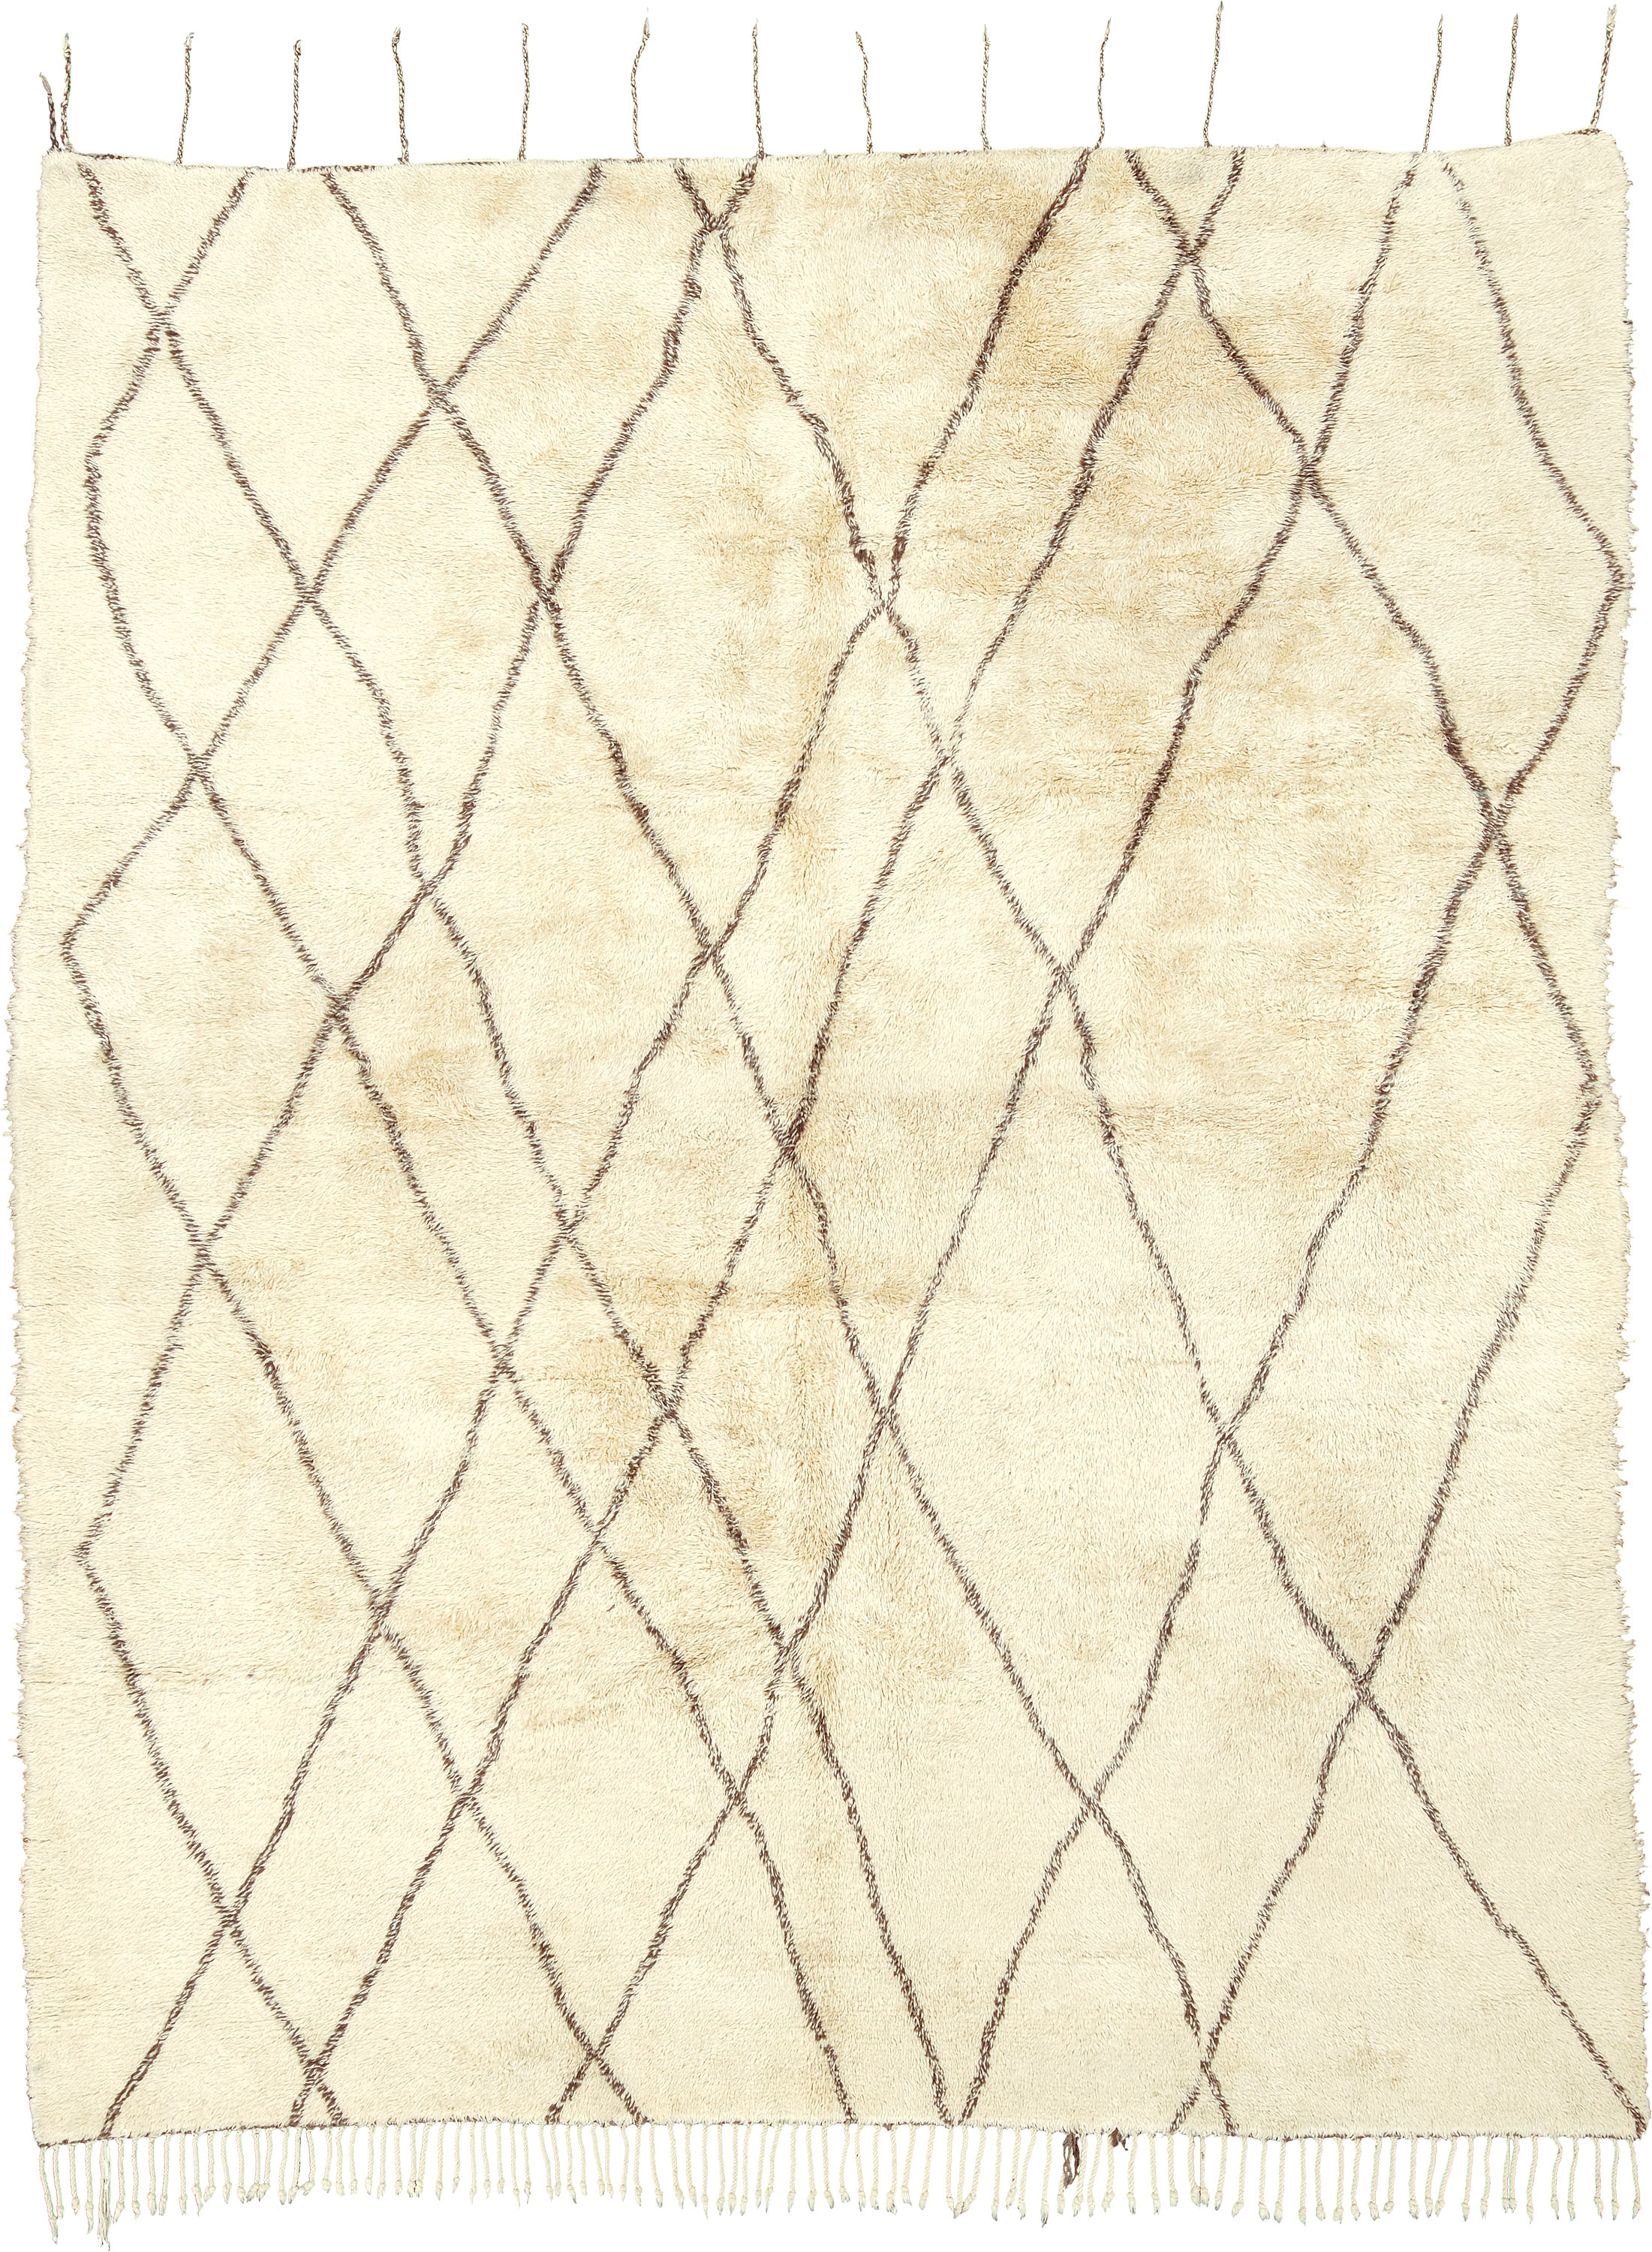 Berber Design | Custom Moroccan Carpet | Ref #15198 | FJ Hakimian | Carpet Gallery in NY